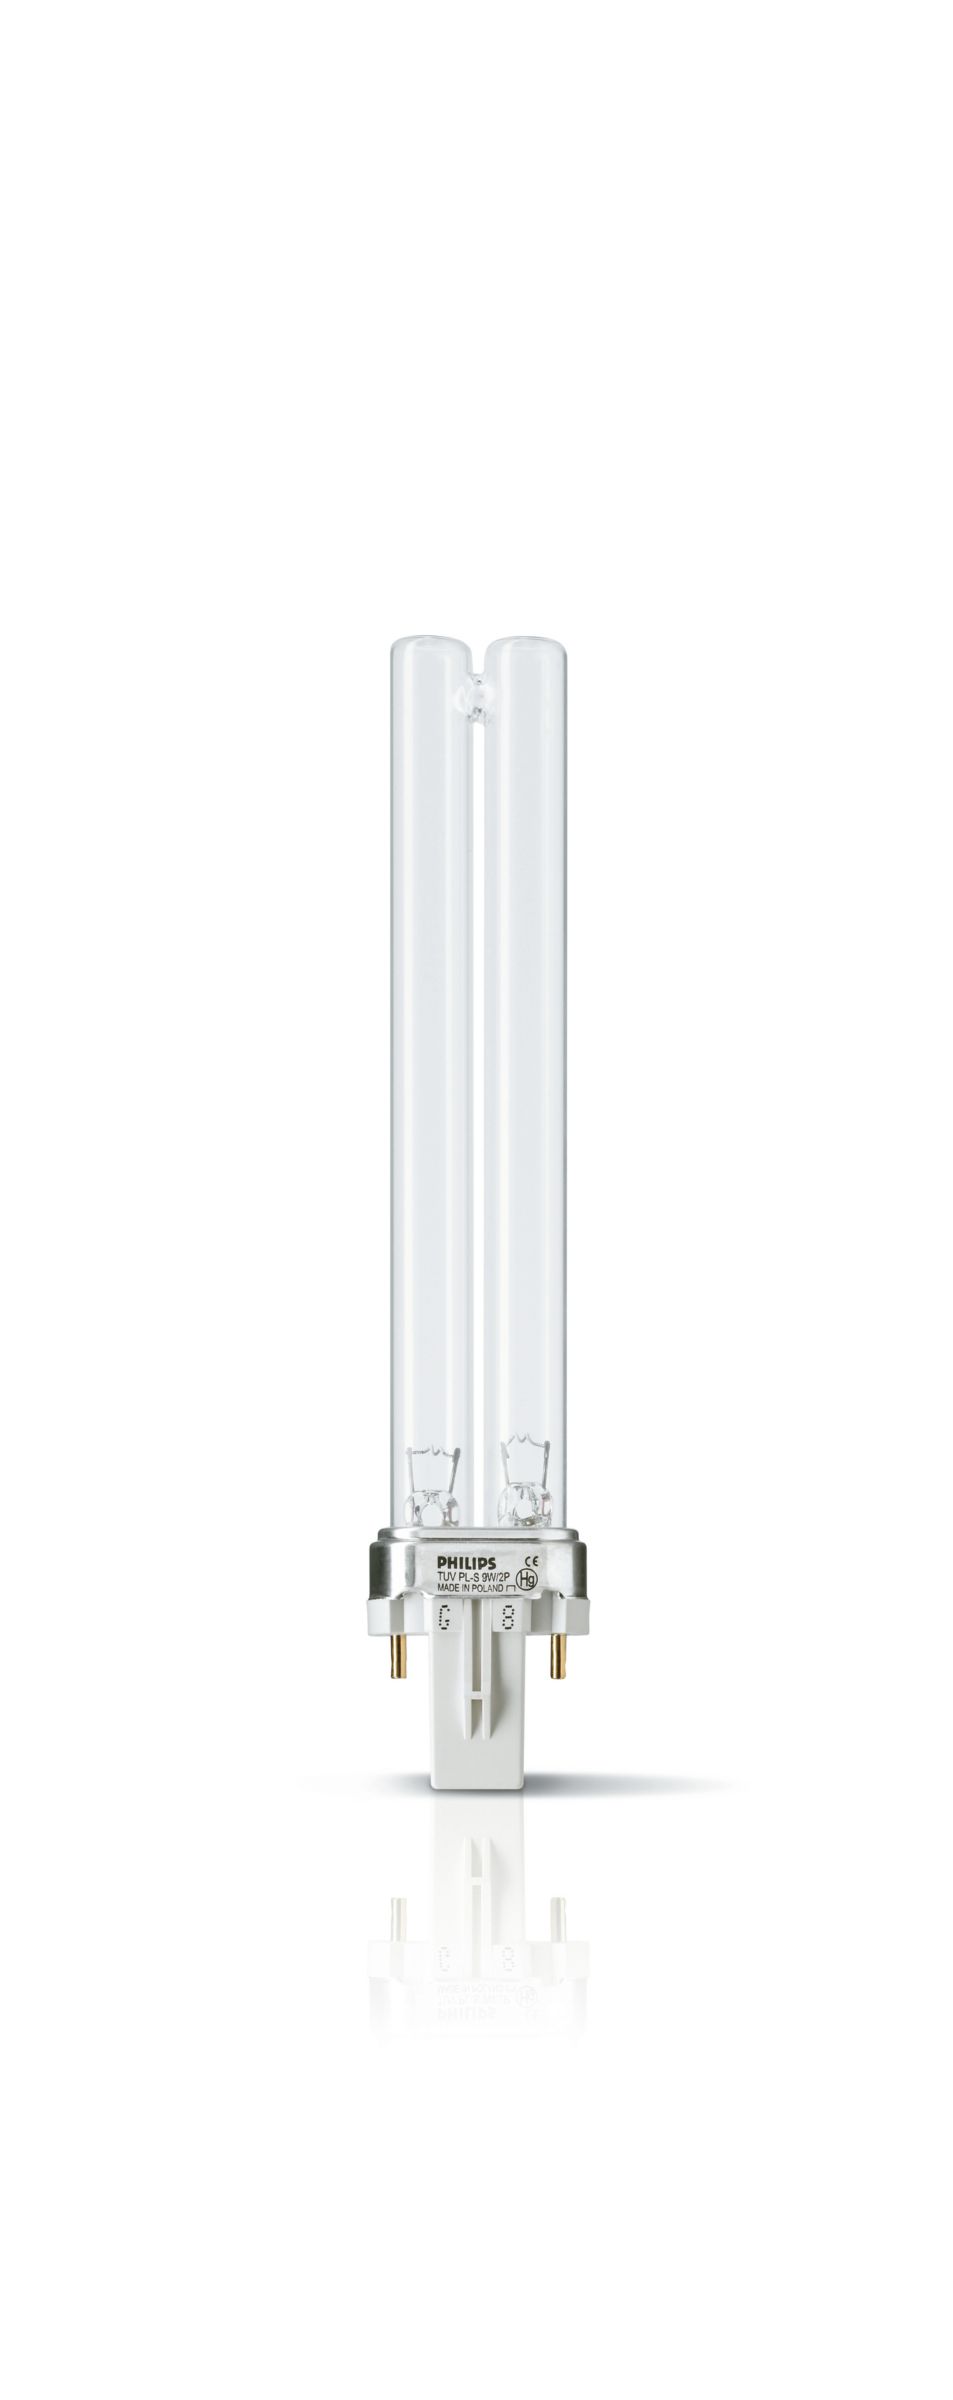 Exclusief verwijderen vermomming UV-C germicidal lamps | Philips lighting